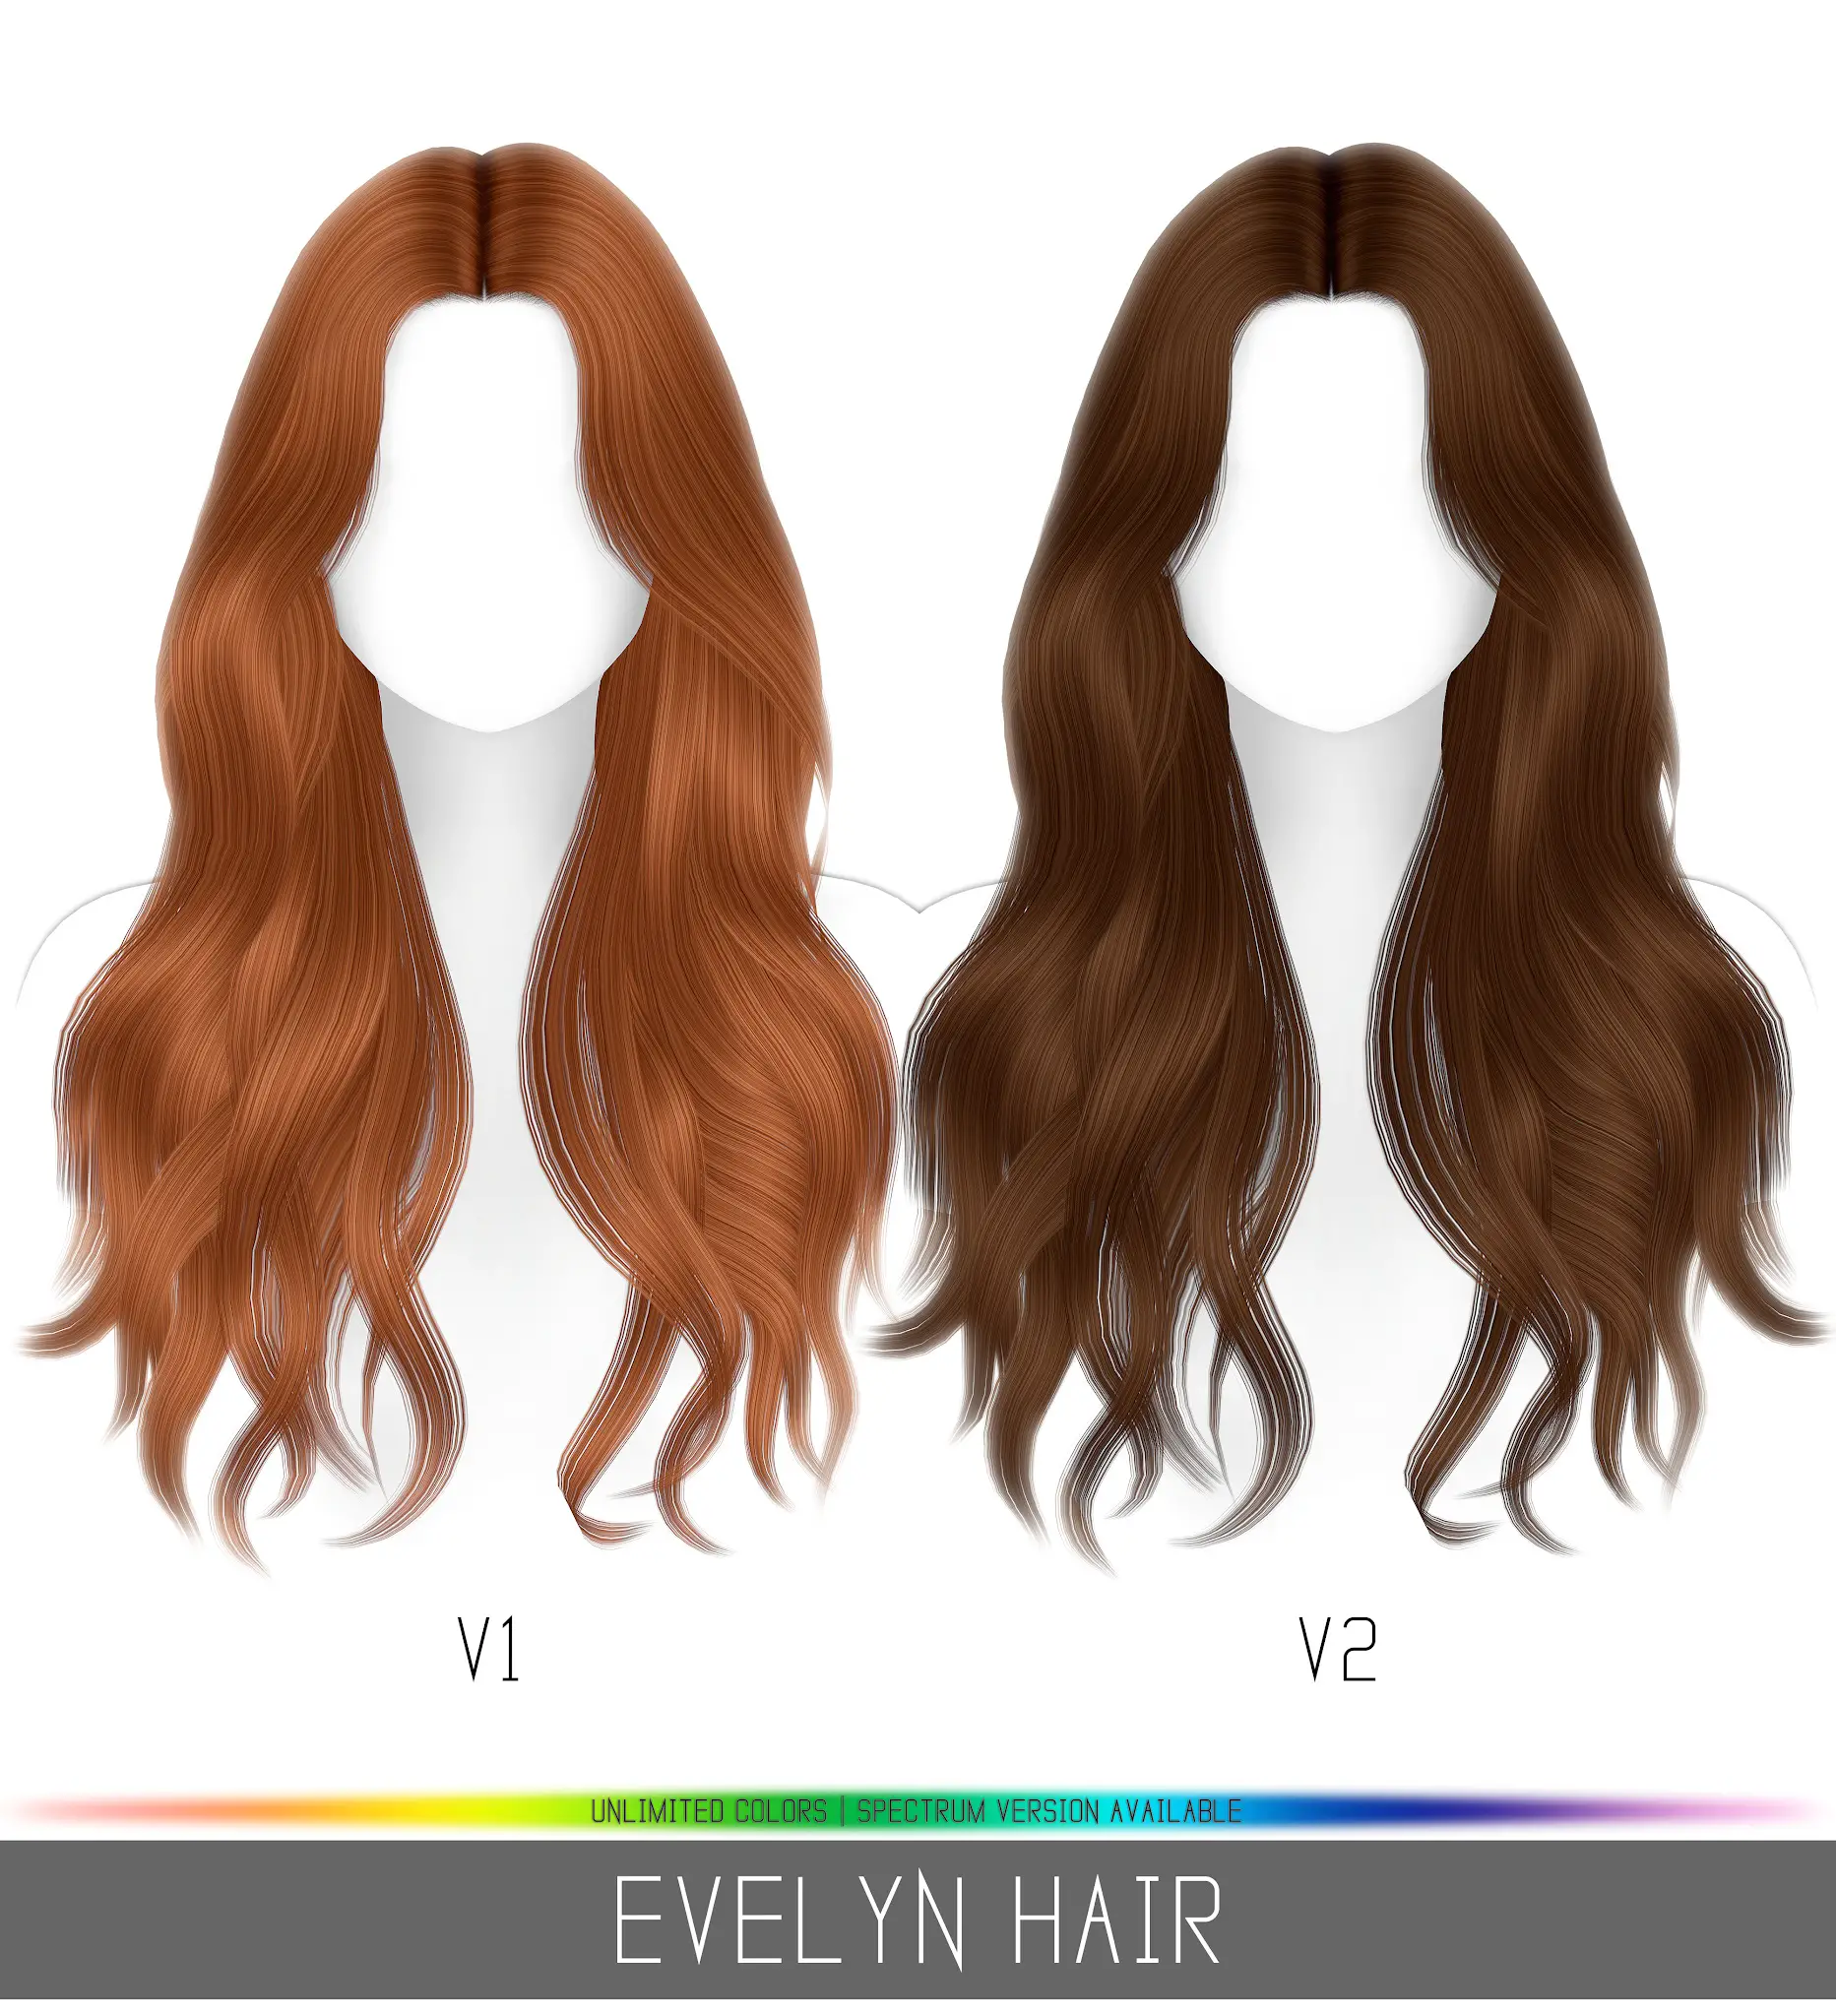 Evelyn Hair Simpliciaty Sims 4 Hairs